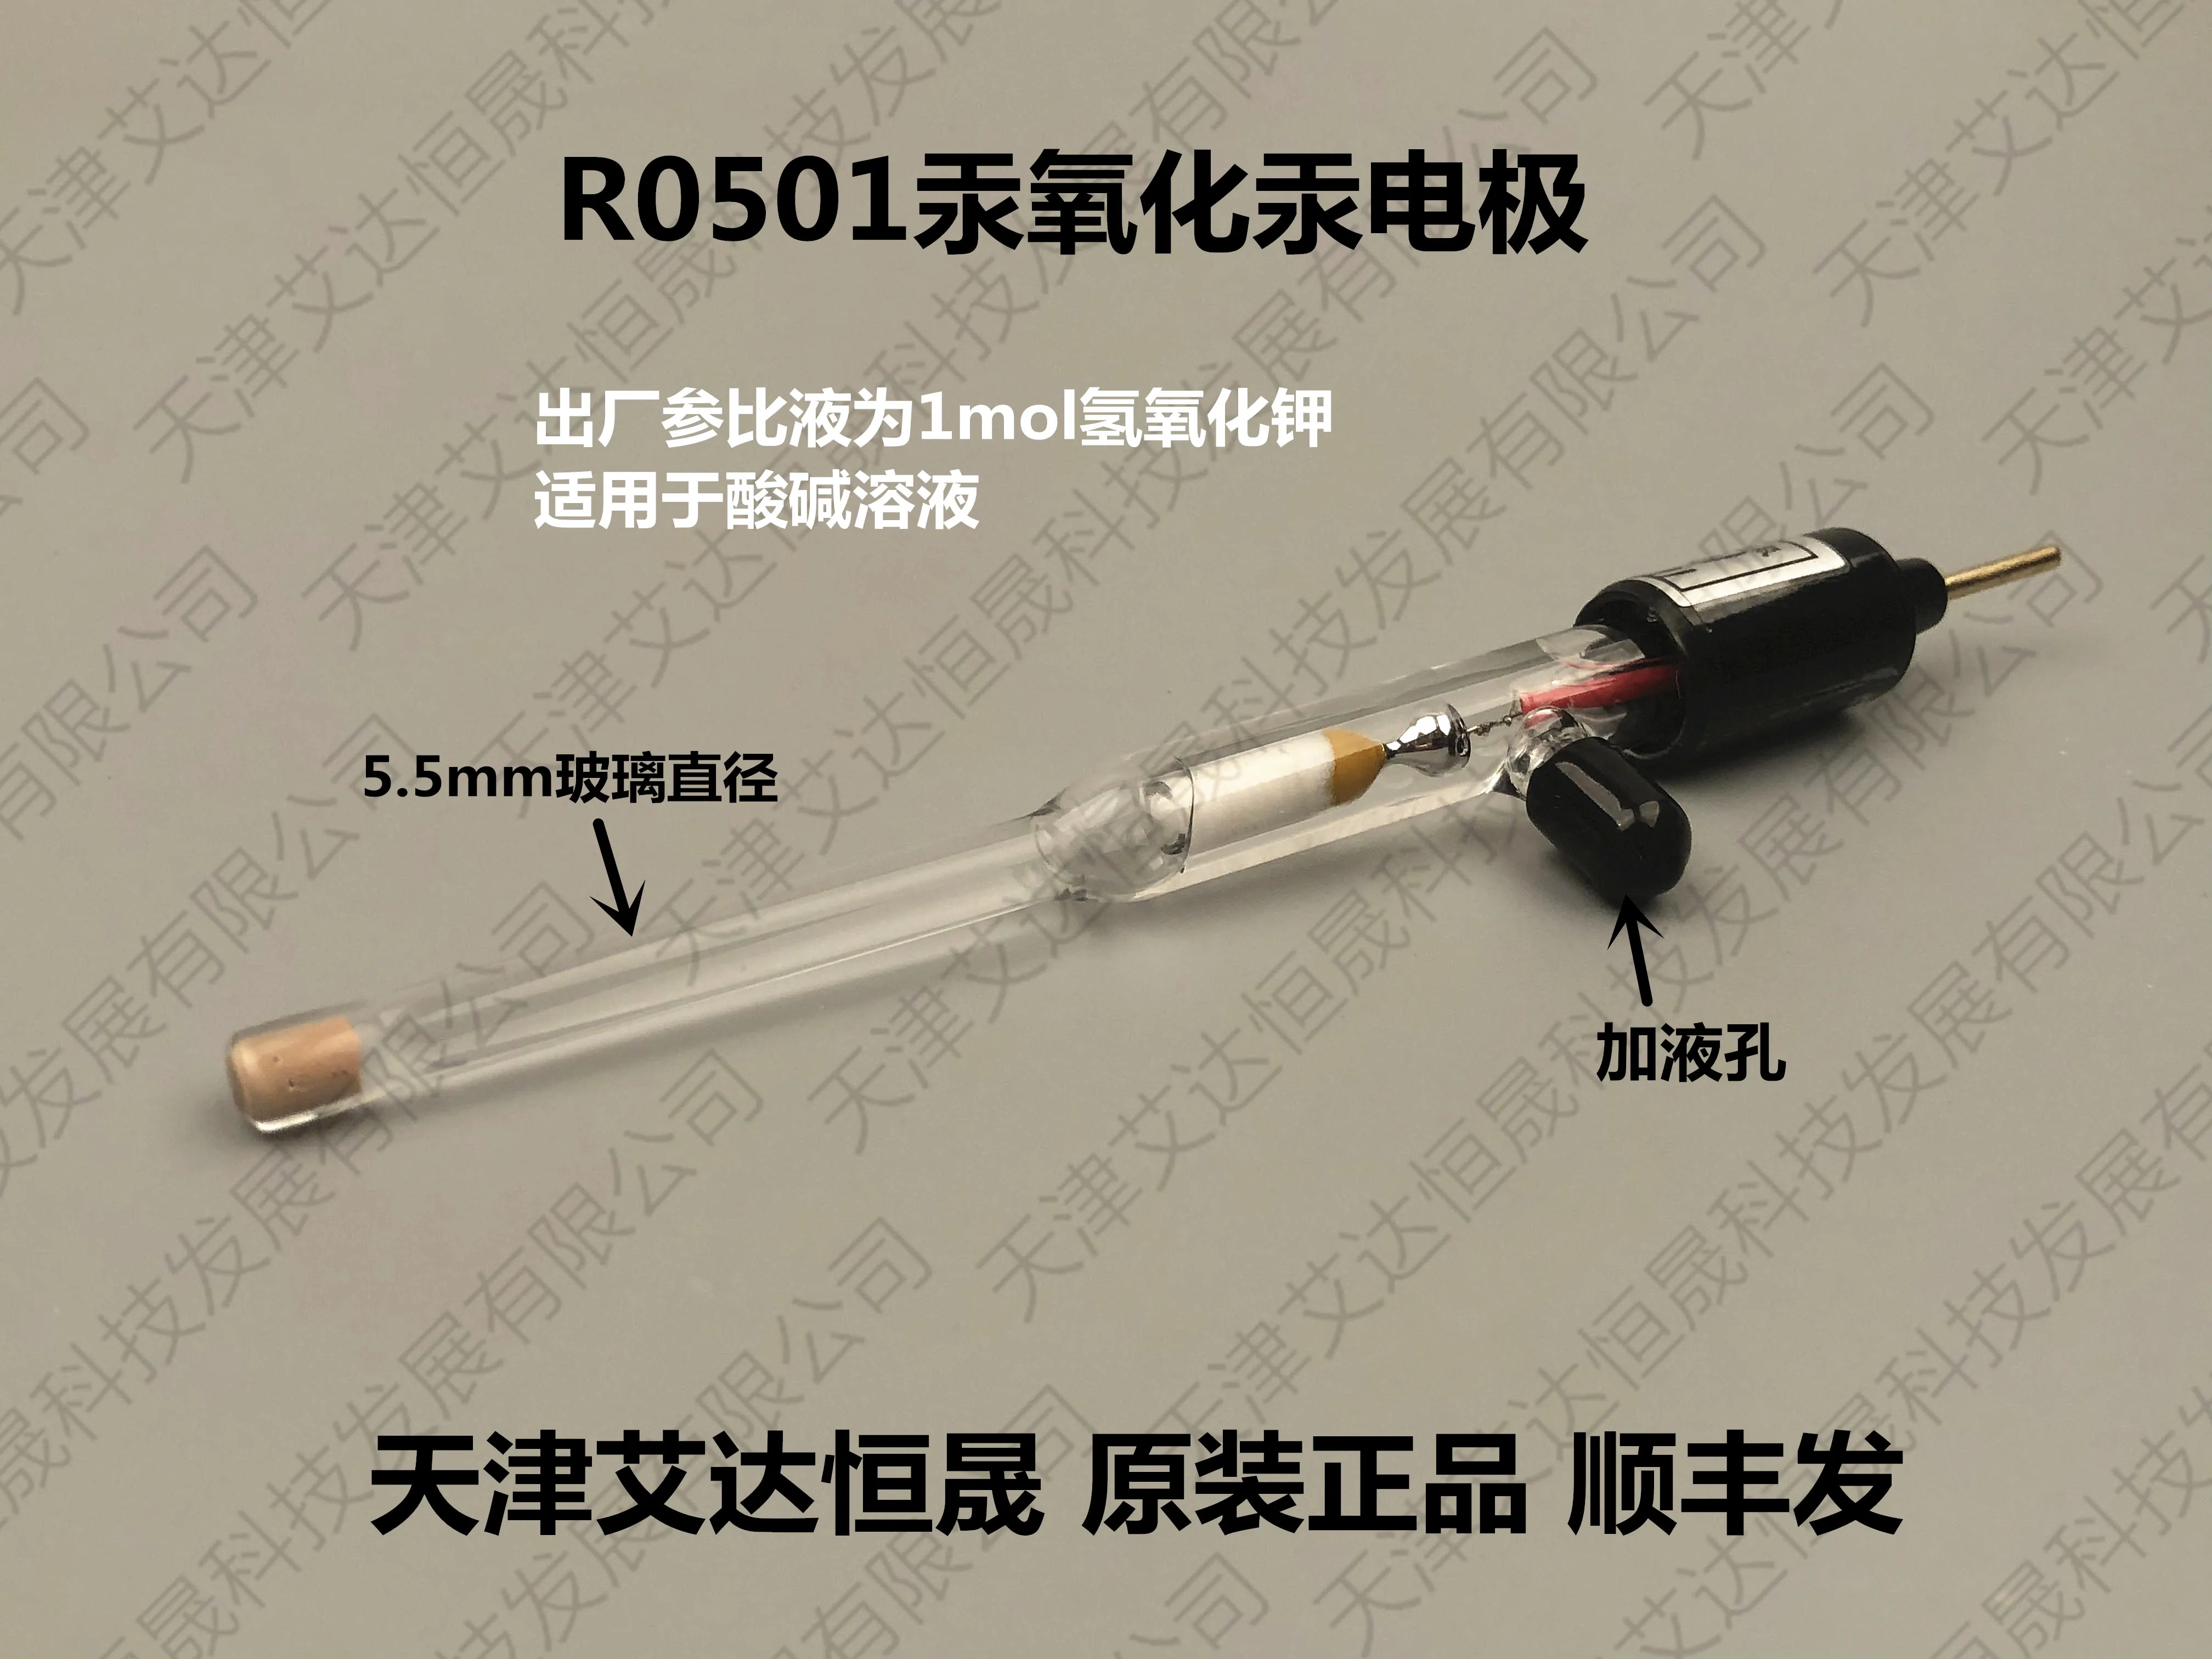 R0501 Ртуть-ртутно-оксидный электрод Hg/Hgo/OH, щелочная диэлектрическая электрохимия